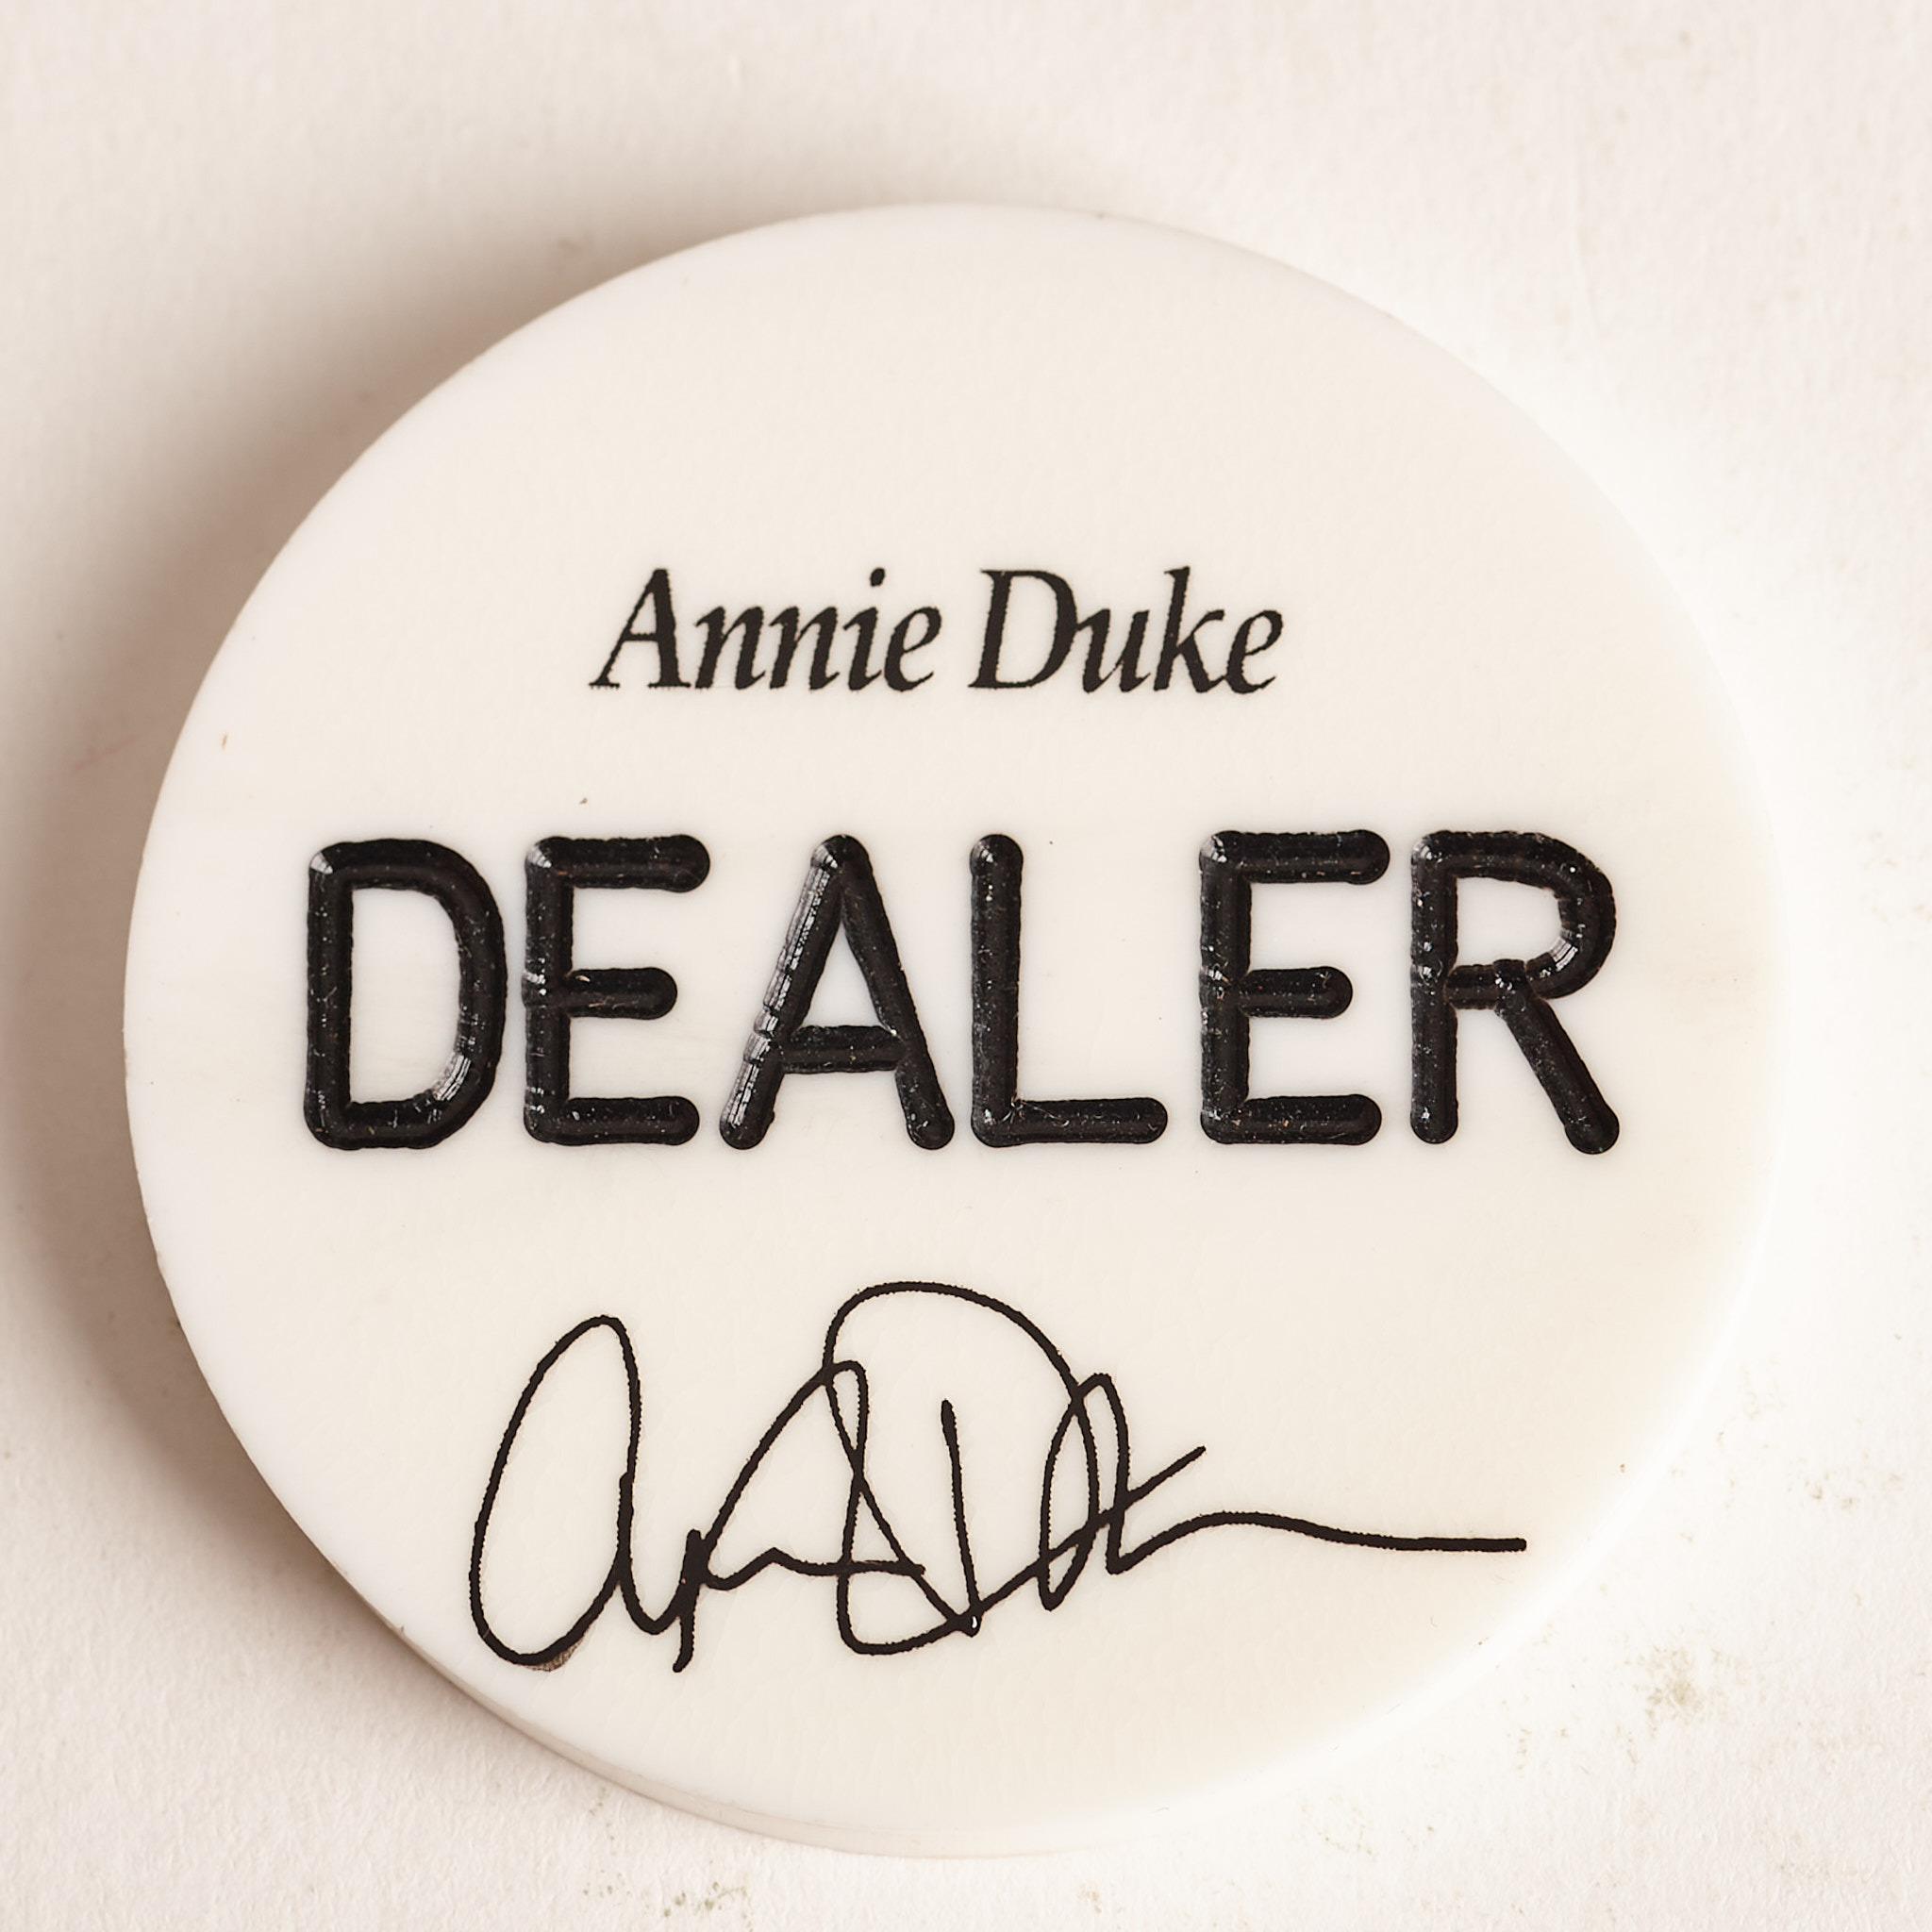 ANNIE DUKE “THE DUCHESS OF POKER”, WORLD SERIES OF POKER WINNER, Poker Dealer Button